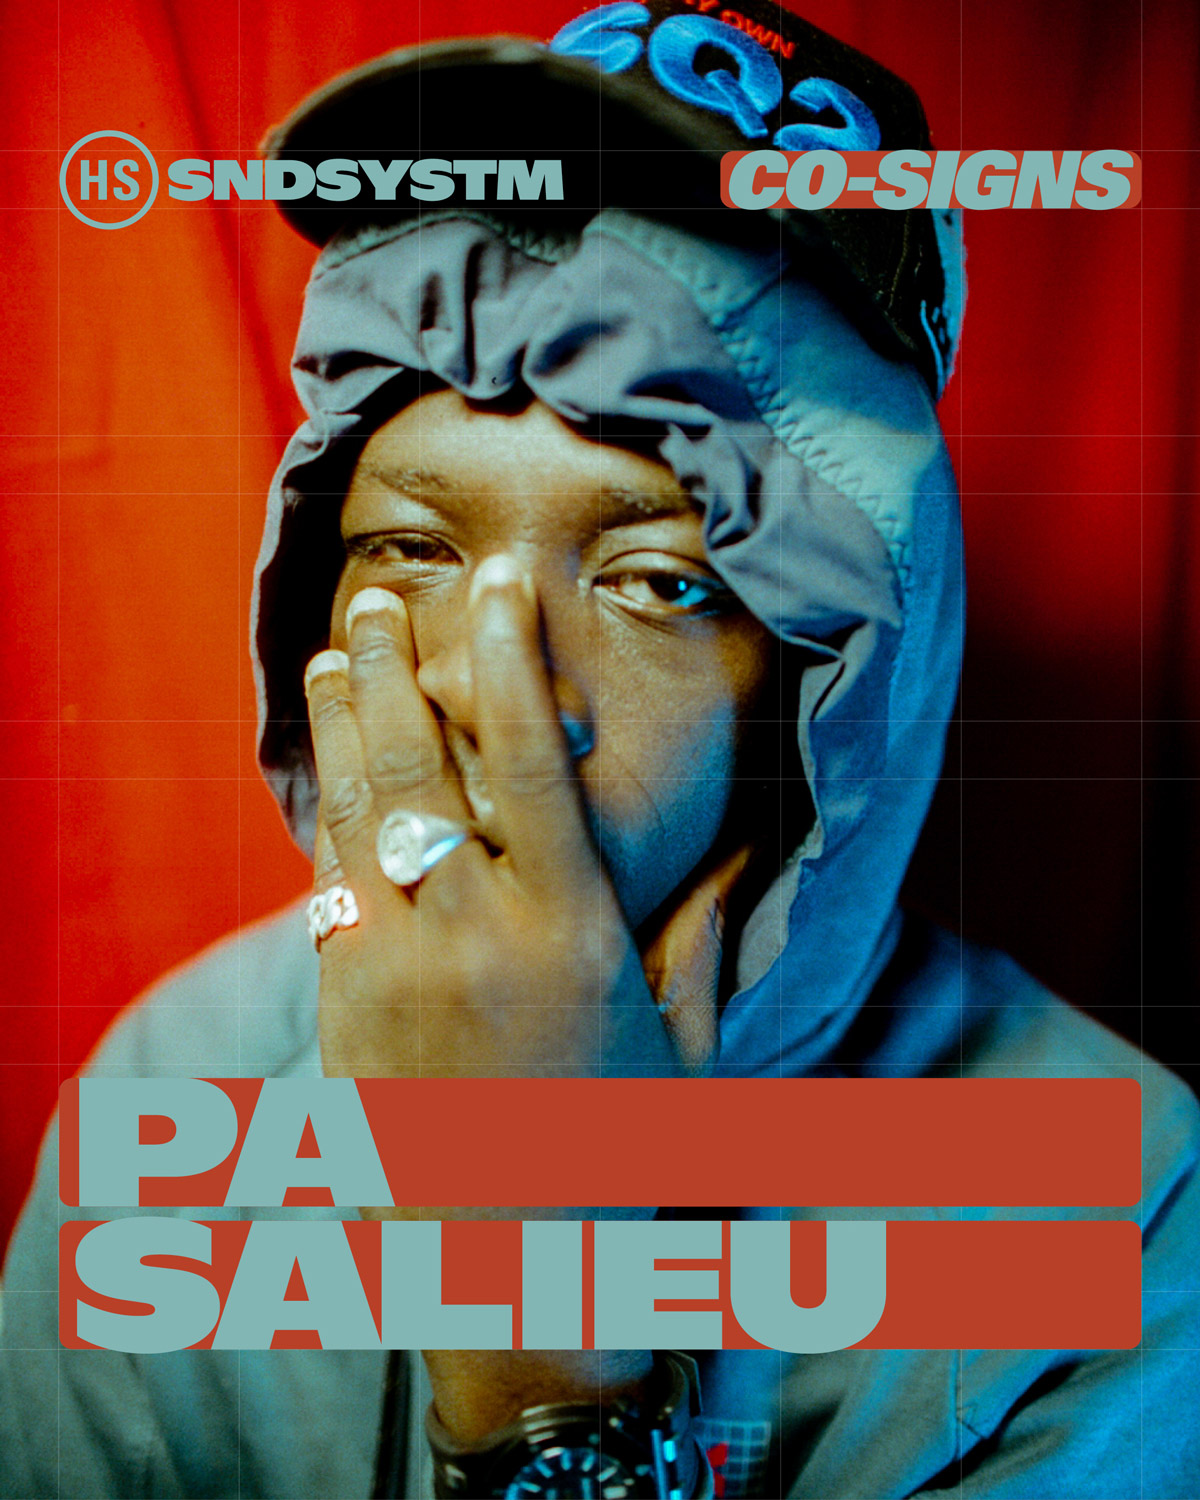 highsnobiety-soundsystem-co-signs-pa-salieu-main